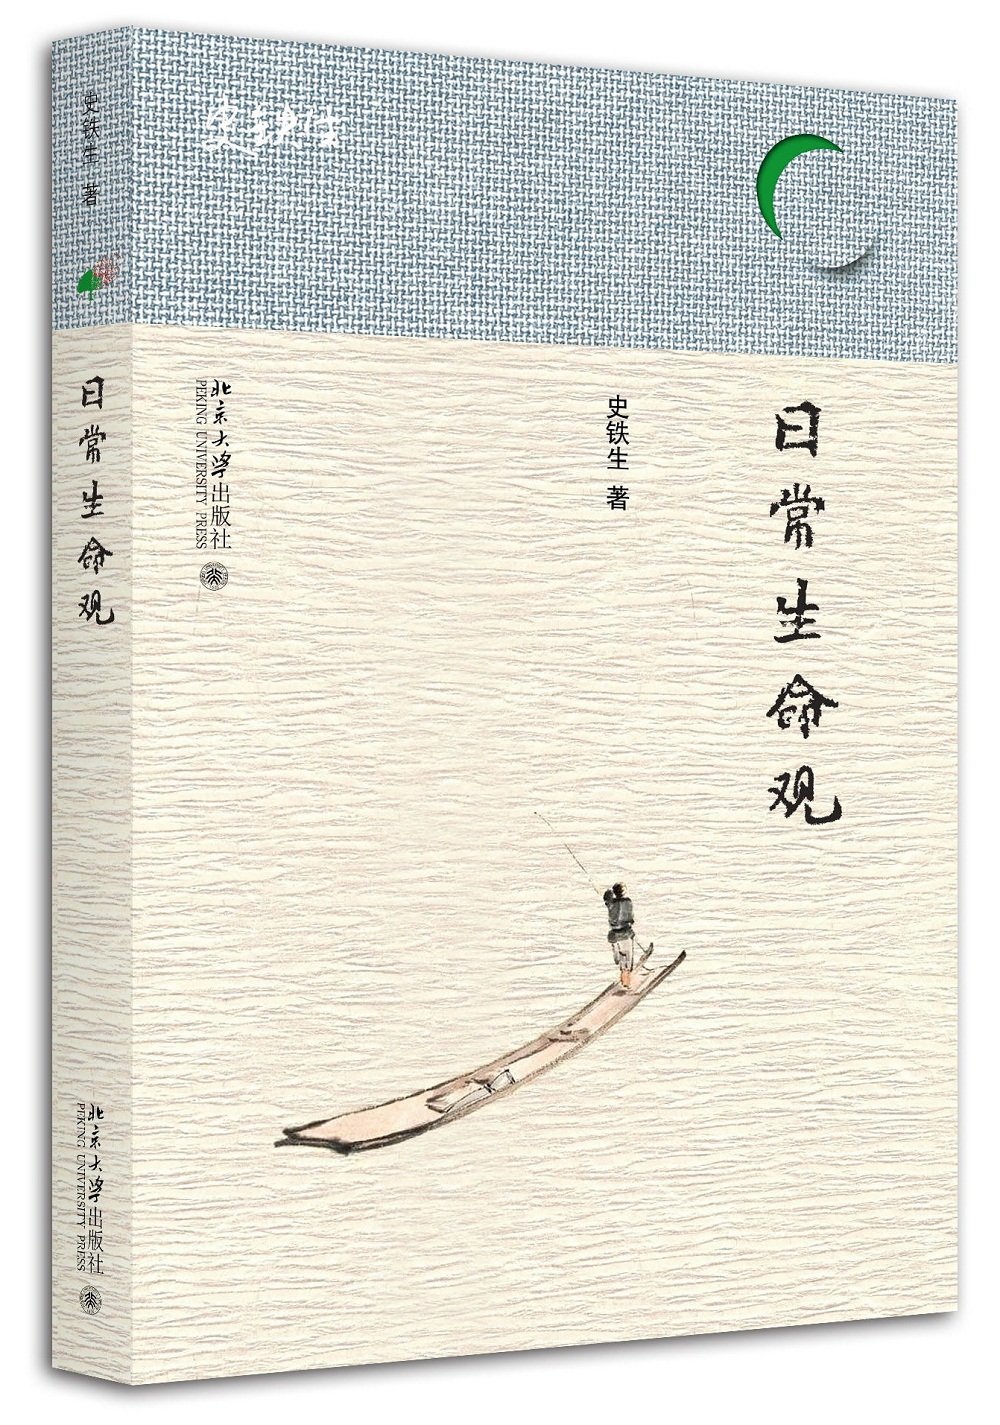 日常生命观 史铁生 著 当代人安顿心灵的自助书 北京大学出版社 正版书籍